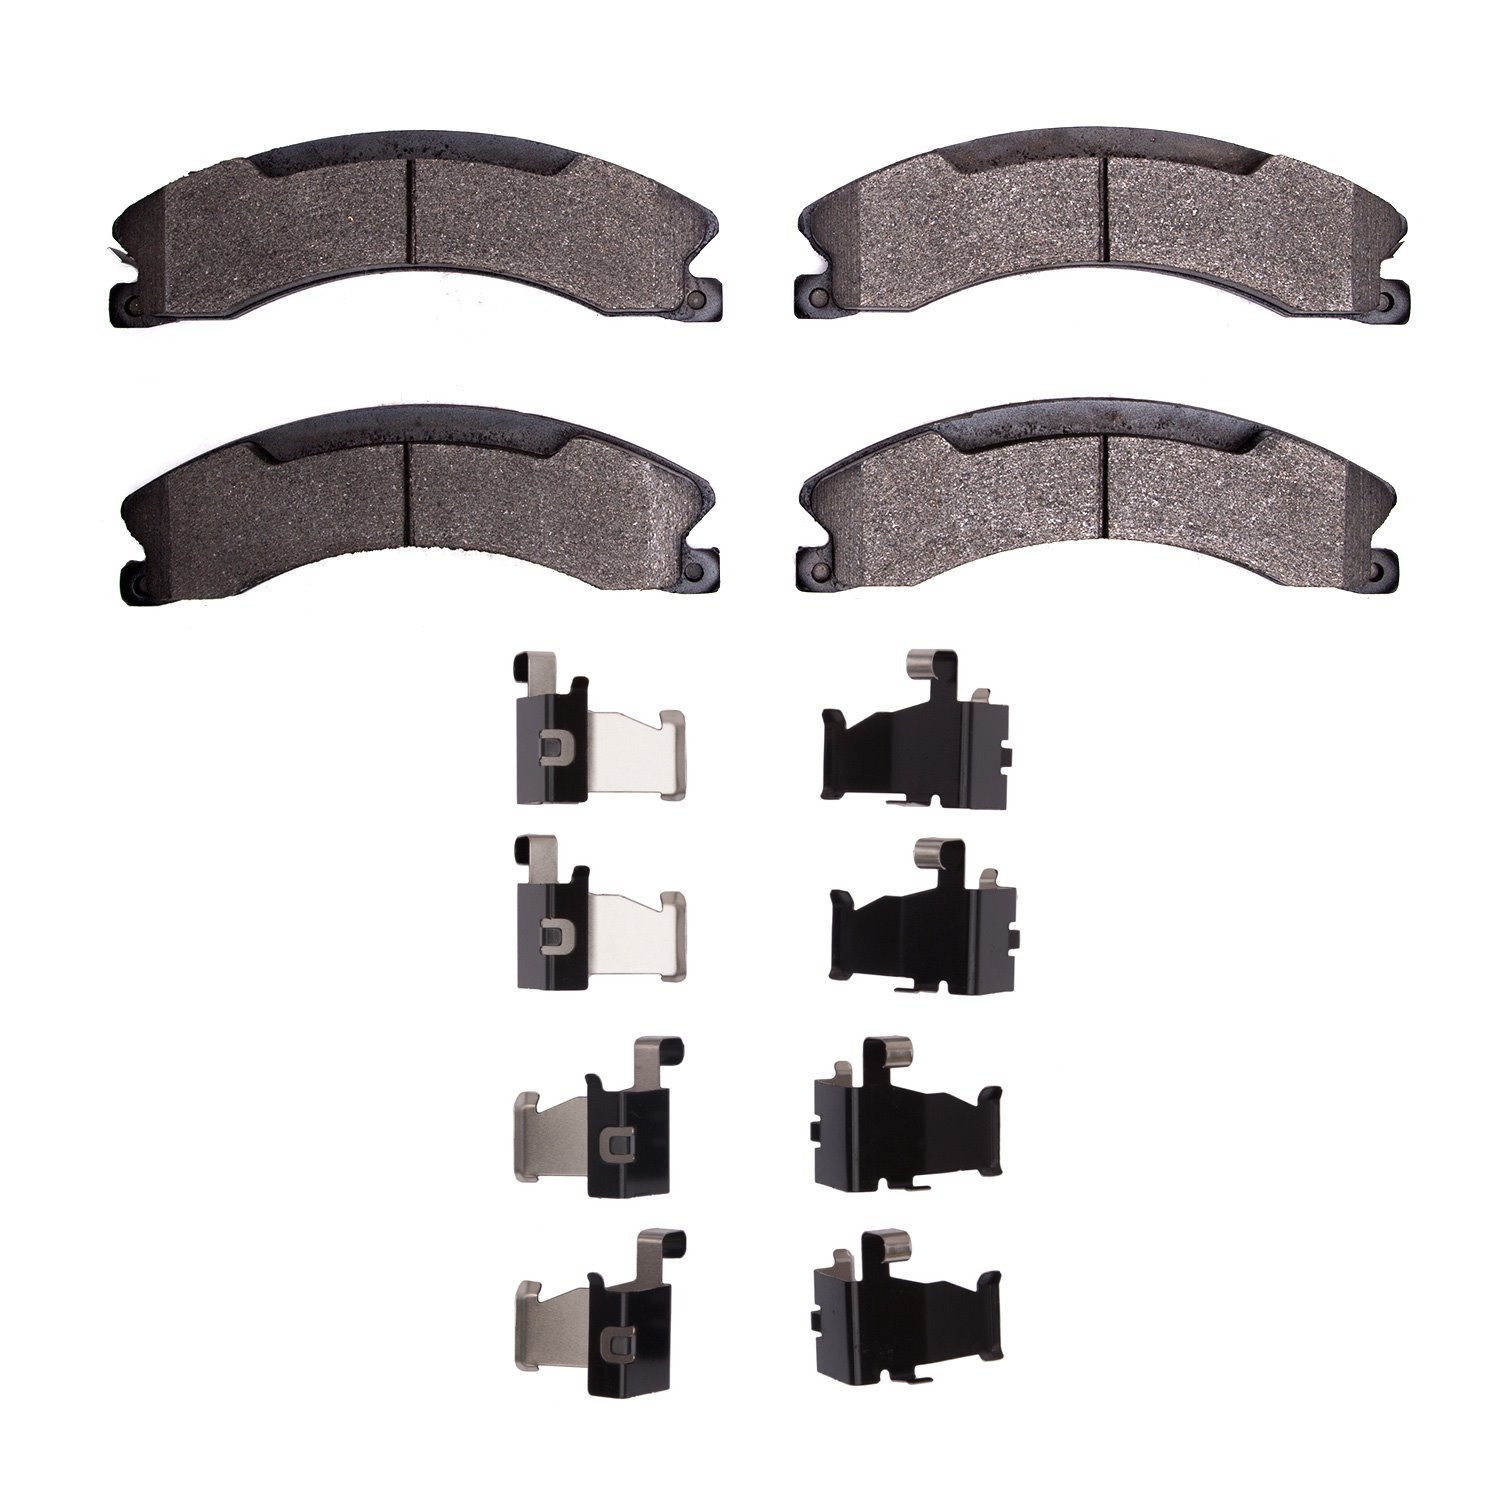 3000-Series Semi-Metallic Brake Pads & Hardware Kit, Fits